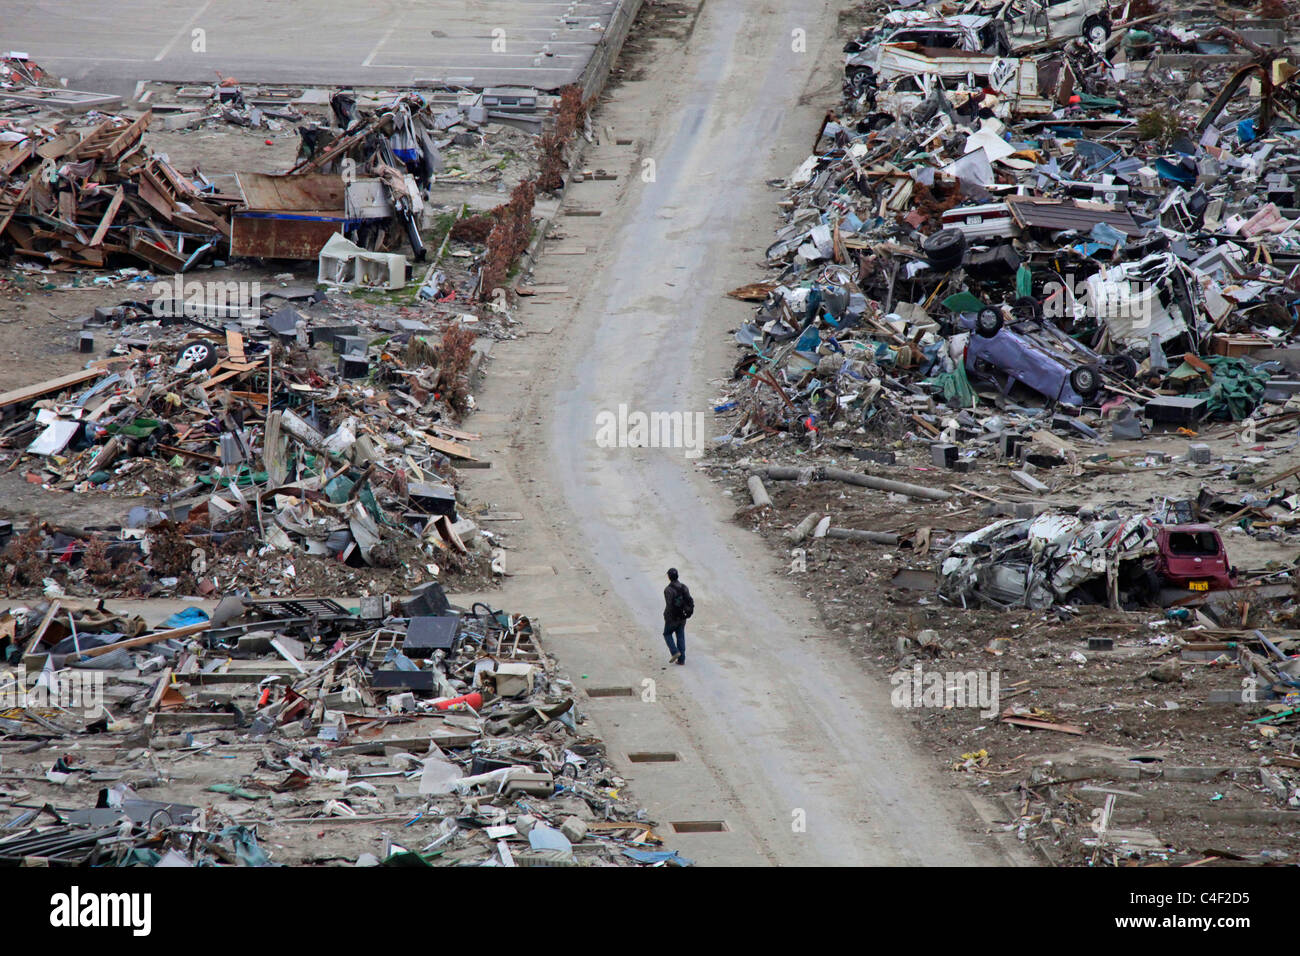 La ville dévastée par le tsunami Ishinomaki Japon Miyagi Banque D'Images